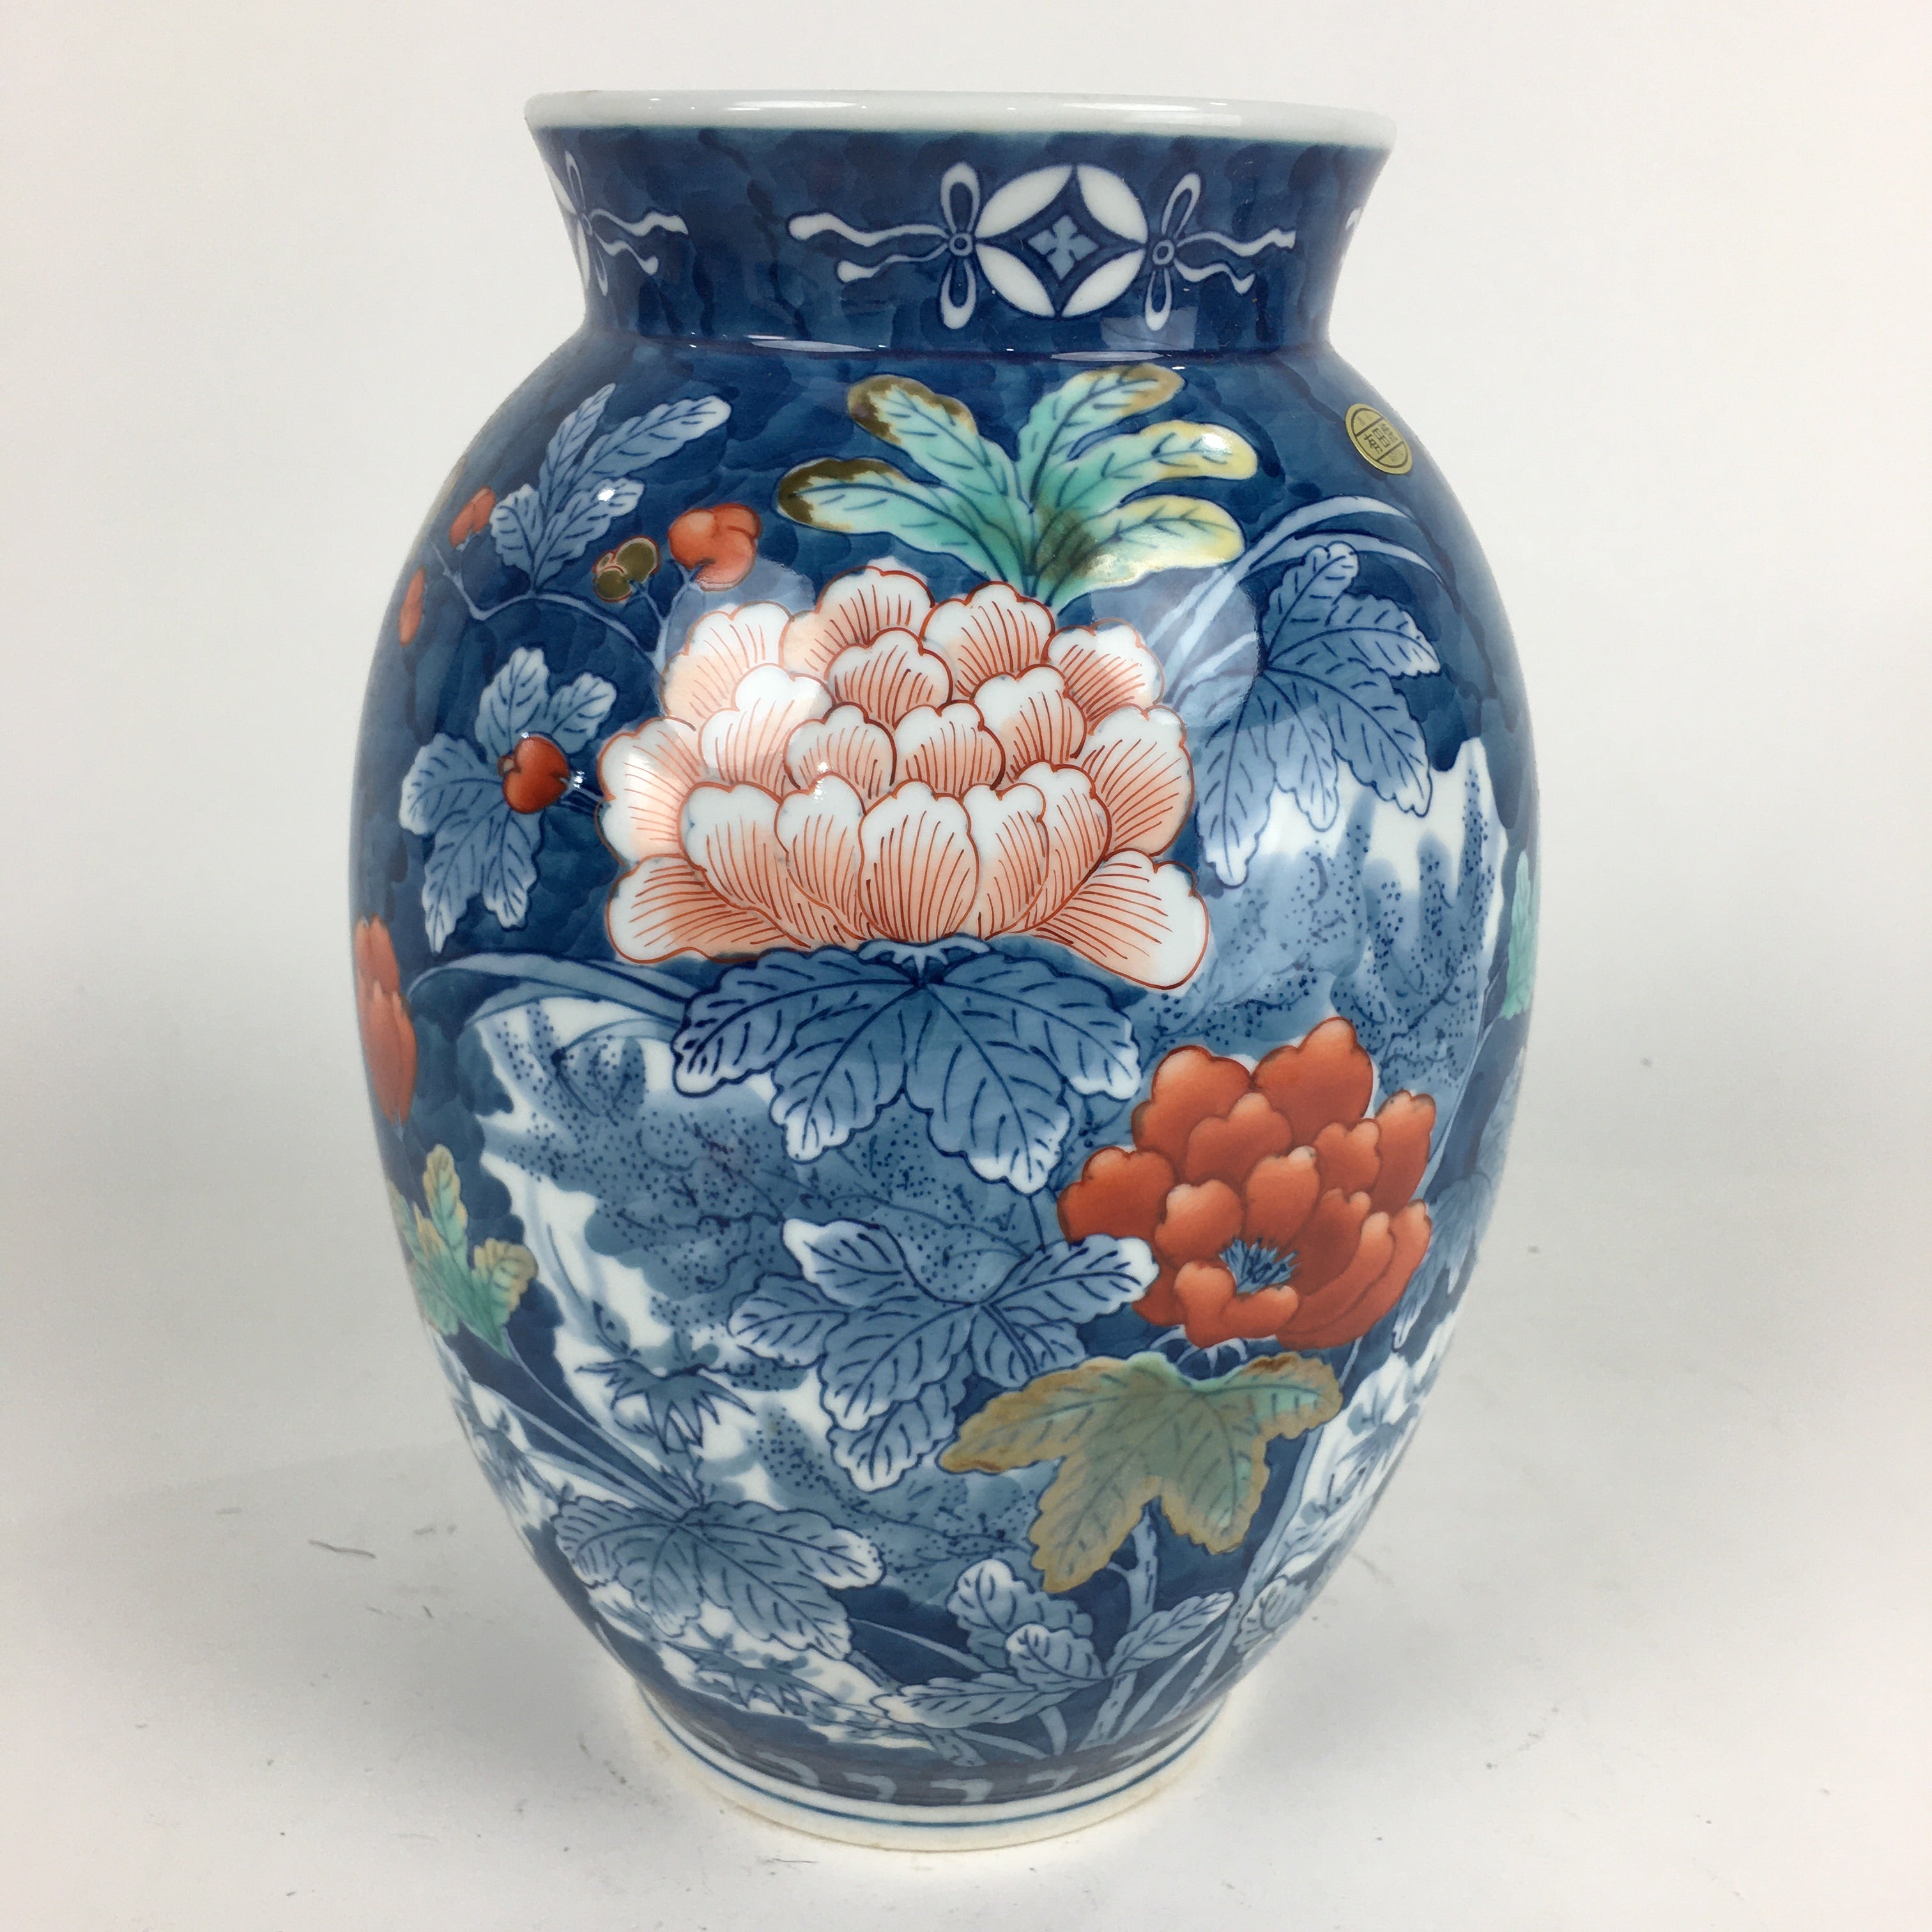 Flower Vase for Home Decor Flower Pot for Table Top Handmade